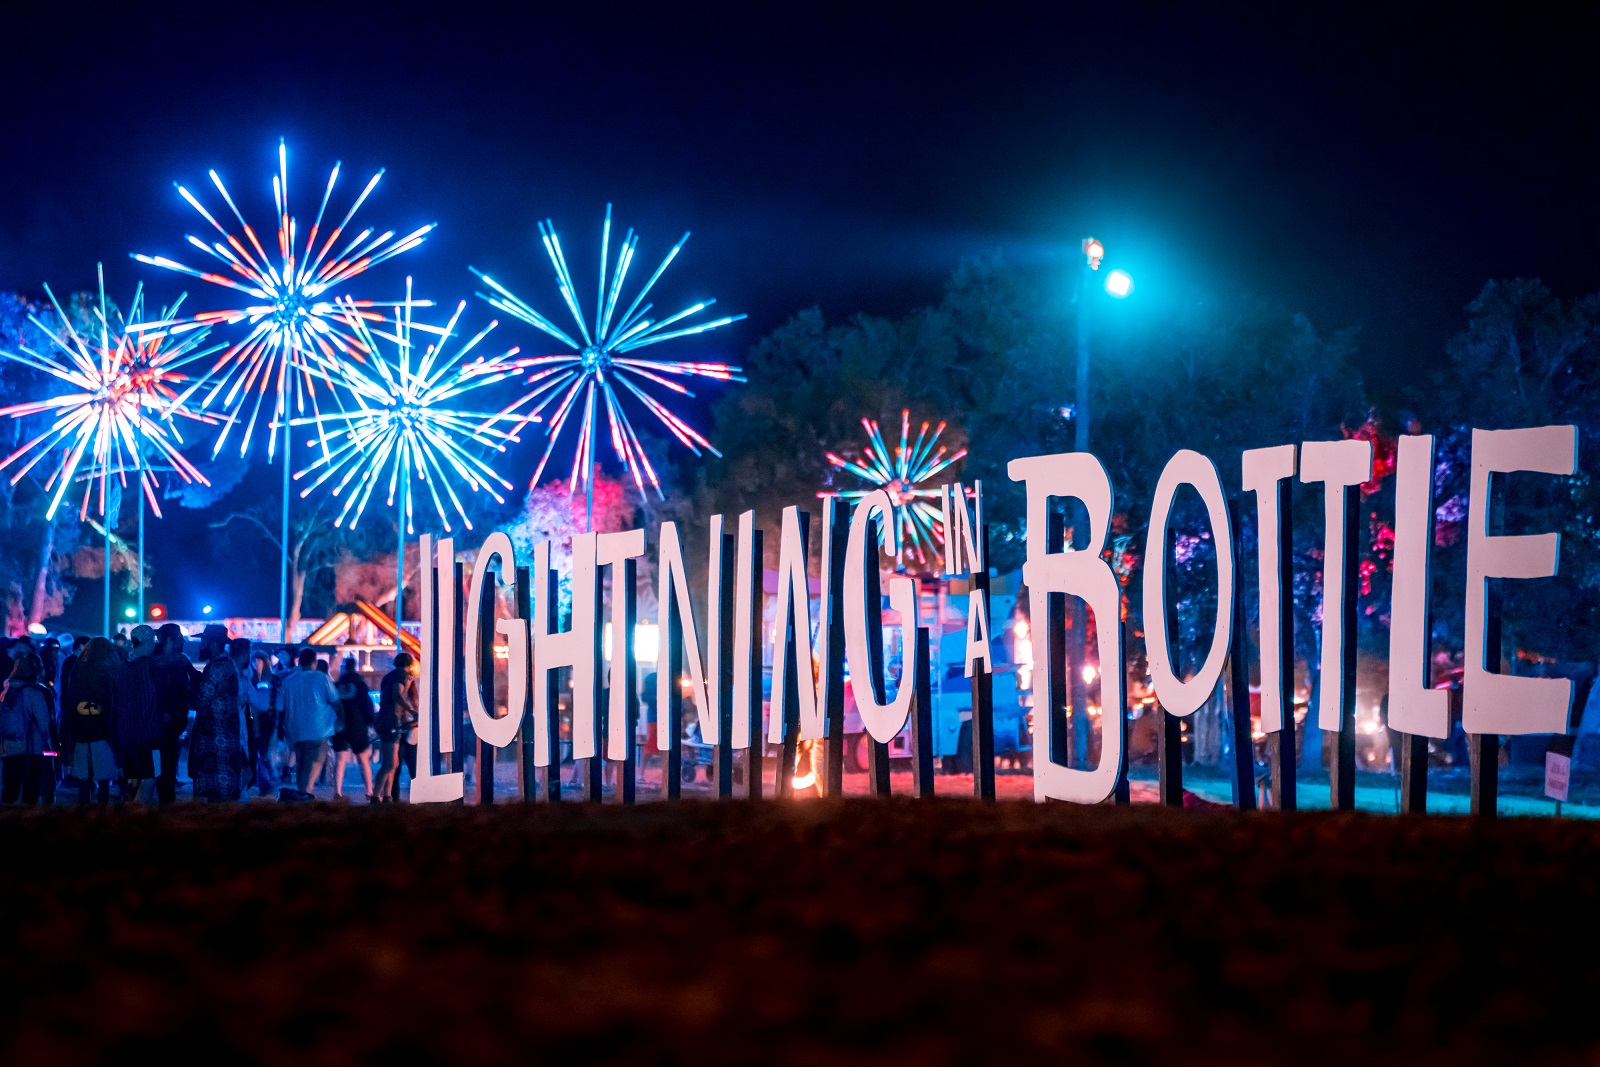 Lighting in a Bottle Festival